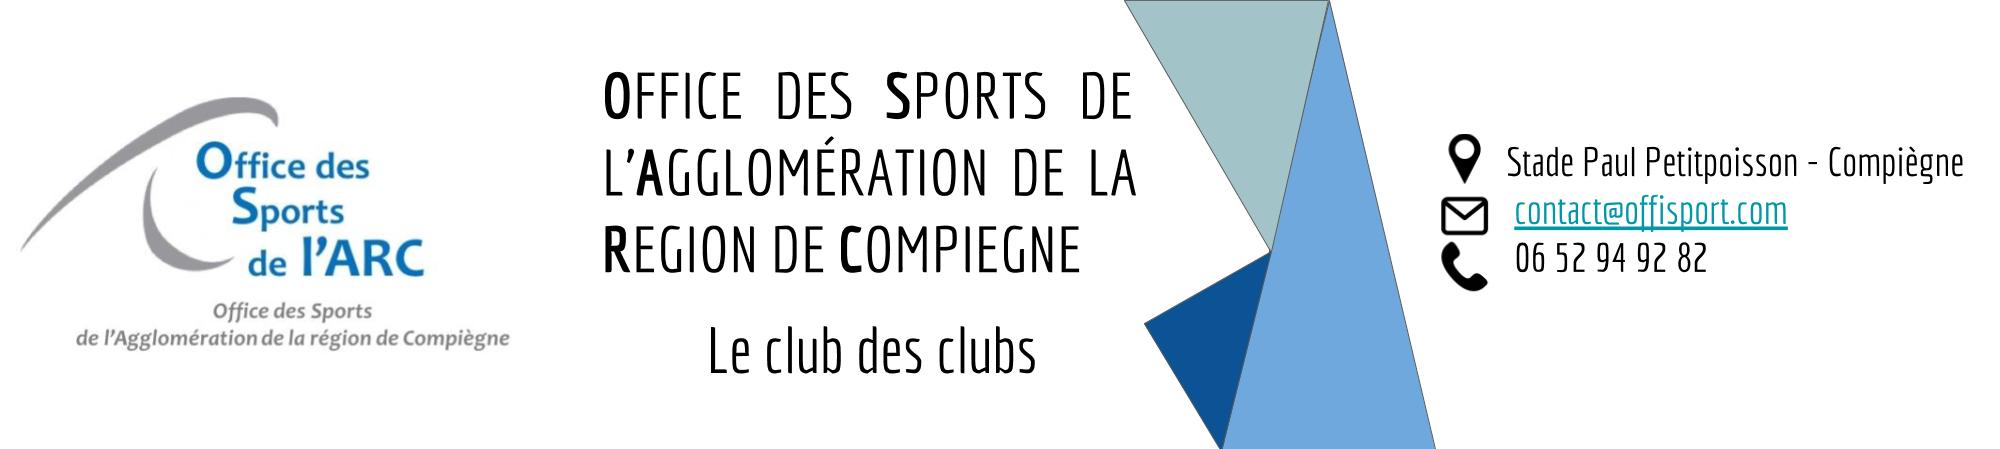 Office des Sports de l'Agglomération de la Région de Compiègne